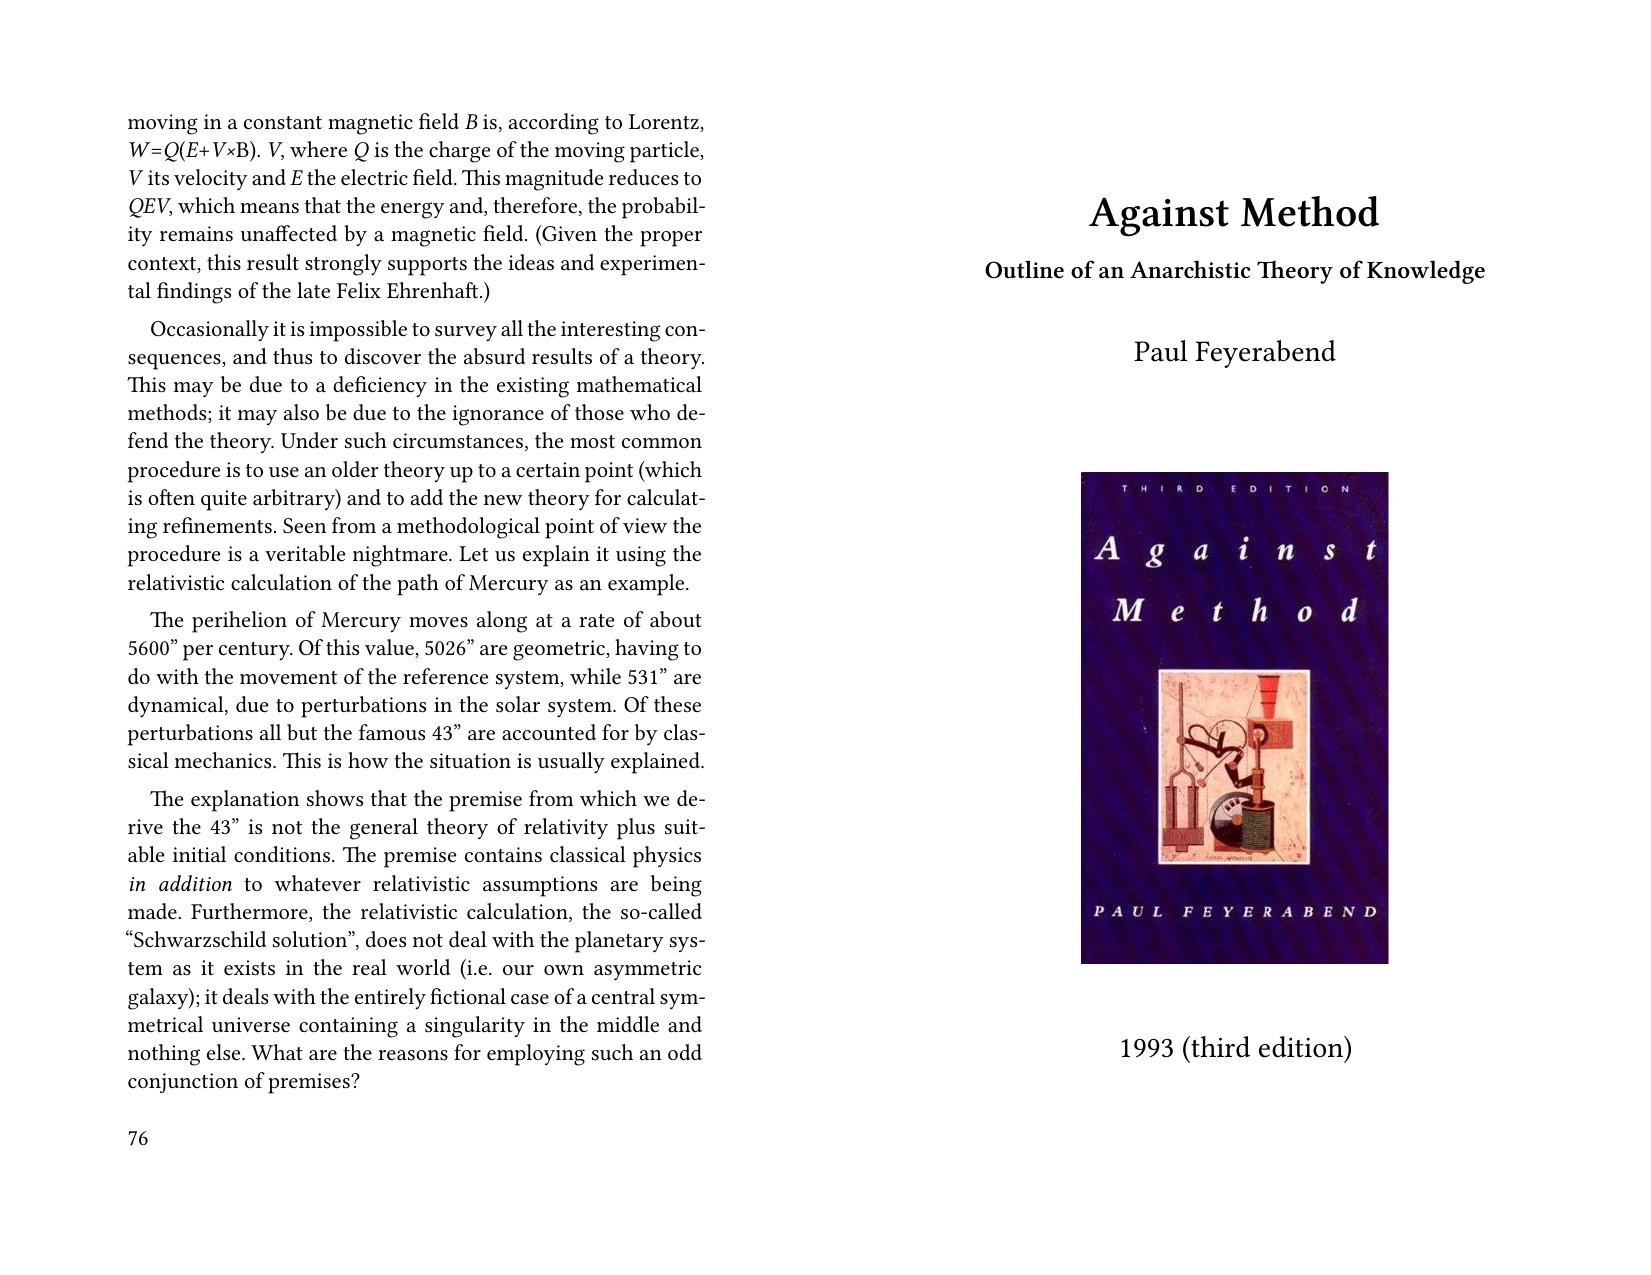 Against Method by Paul Feyerabend